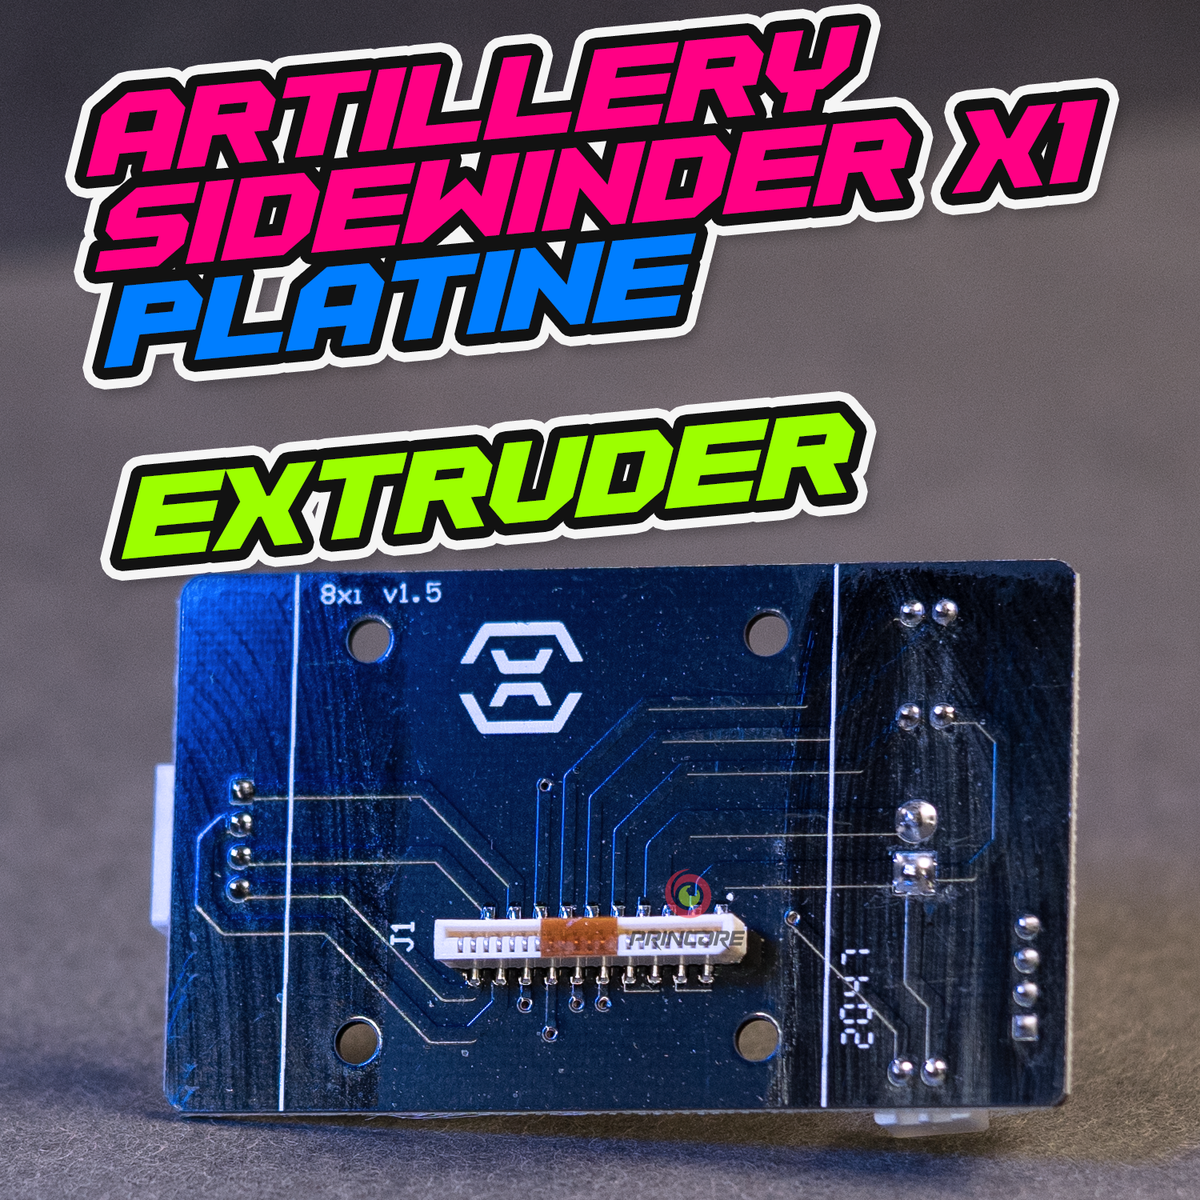 Artillery Sidewinder X1 Platine [Extruder]